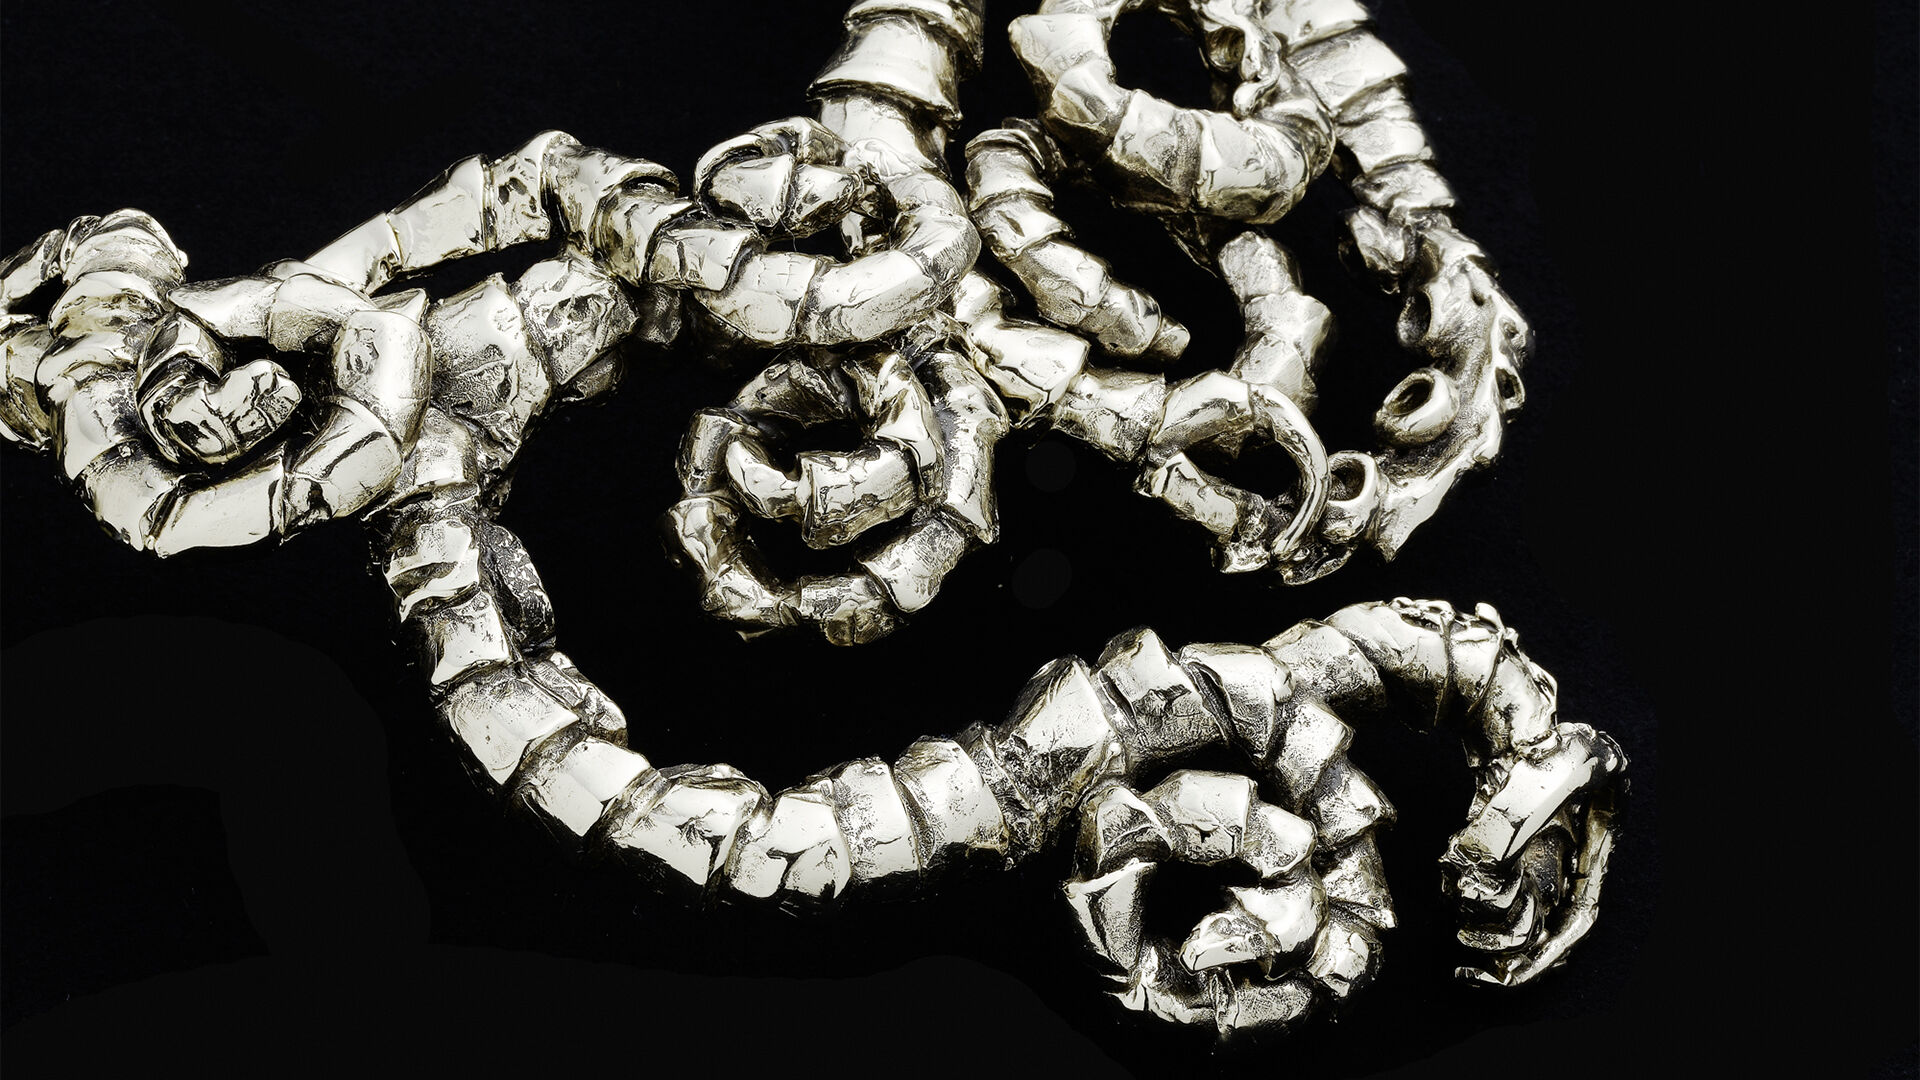 Nautilus necklace detail